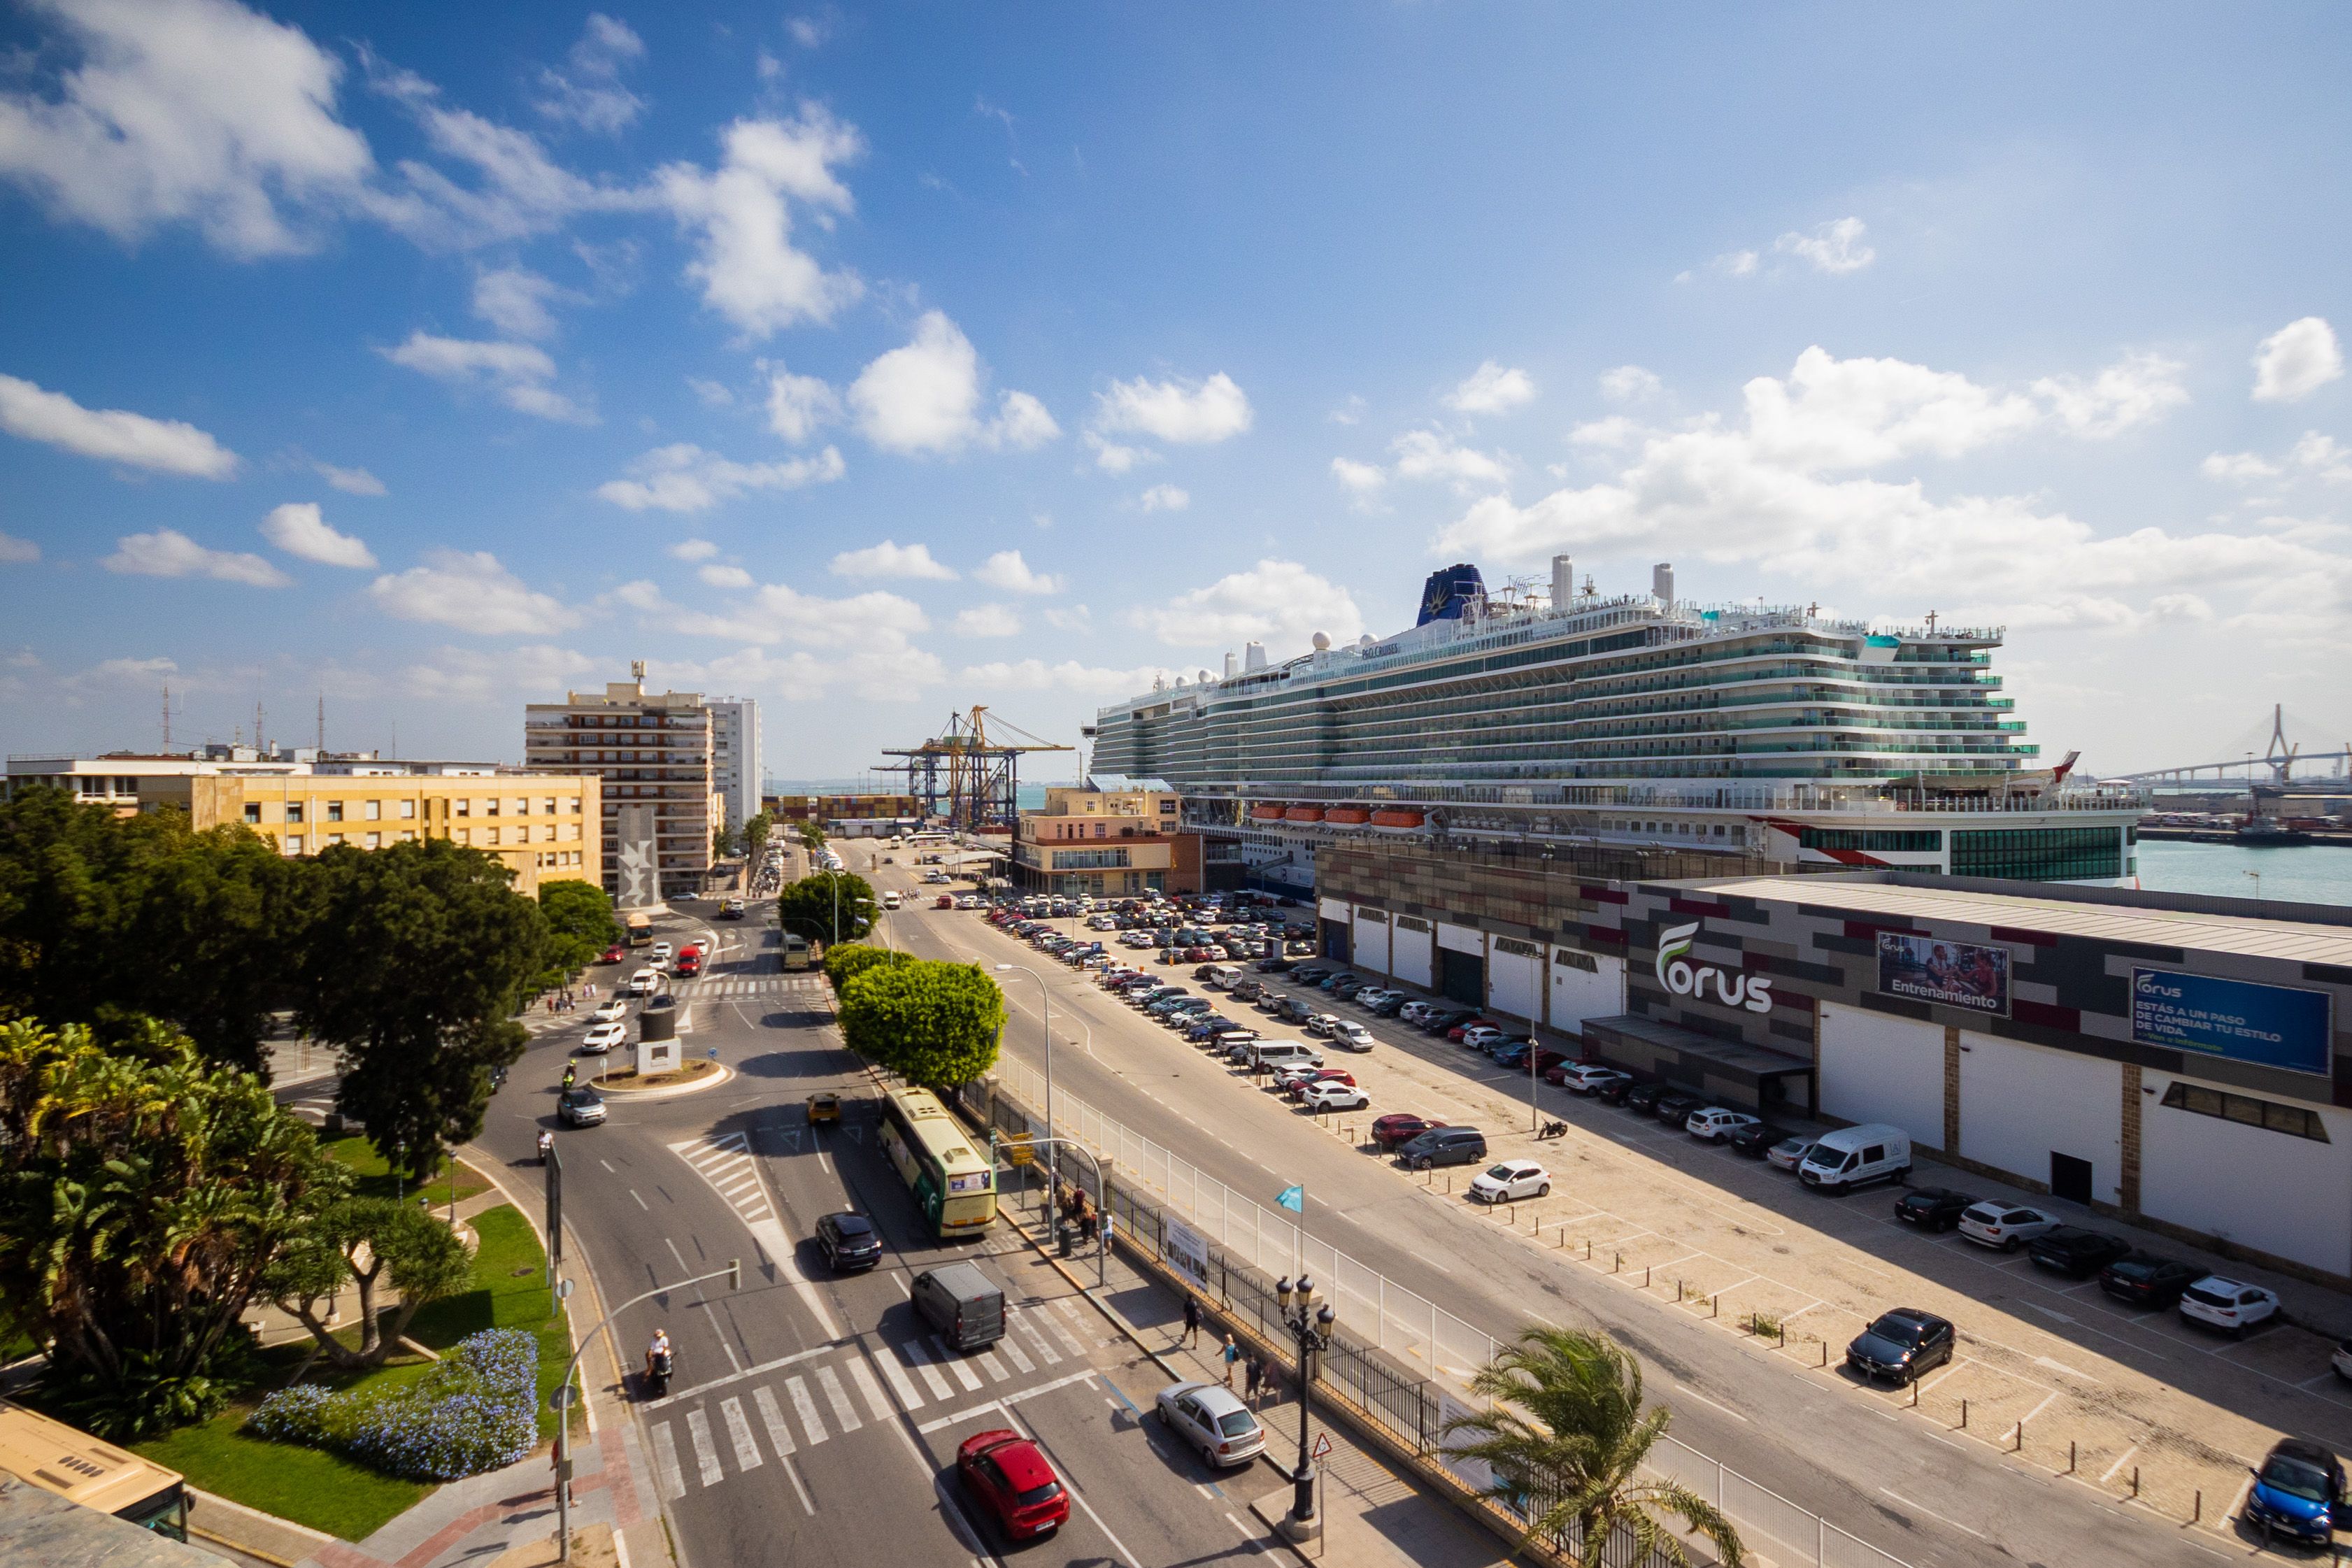 Turismo en Andalucía. Un crucero atracado en el puerto de Cádiz.